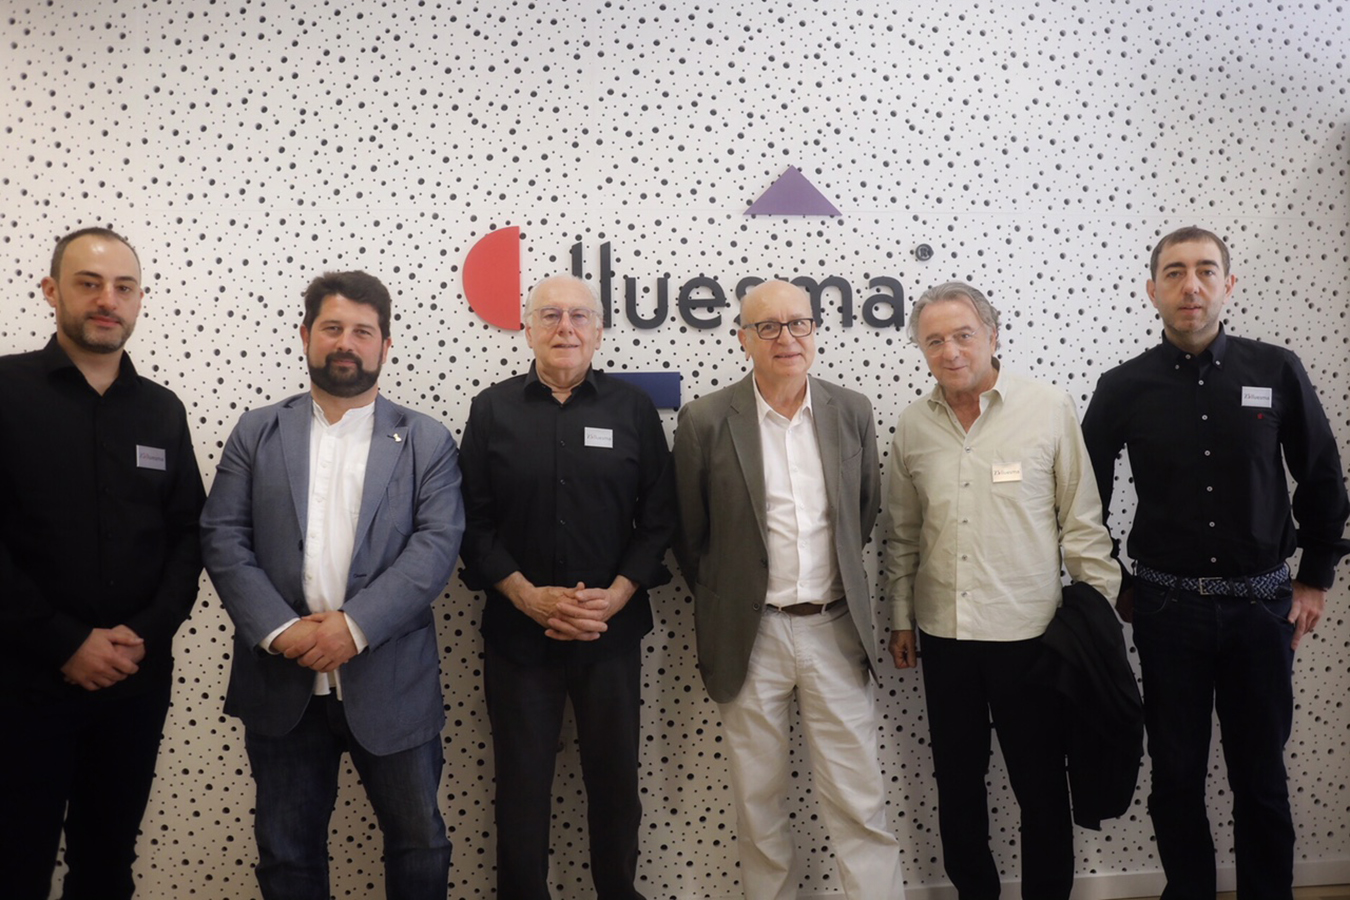 De izquierda a derecha, Carles Lluesma, Natxo Costa, Director General de Comercio de la Generalitat valenciana, Julio Lluesma, los diseñadores Vicent Martínez y Alberto Lievore, y Rubén Lluesma.
